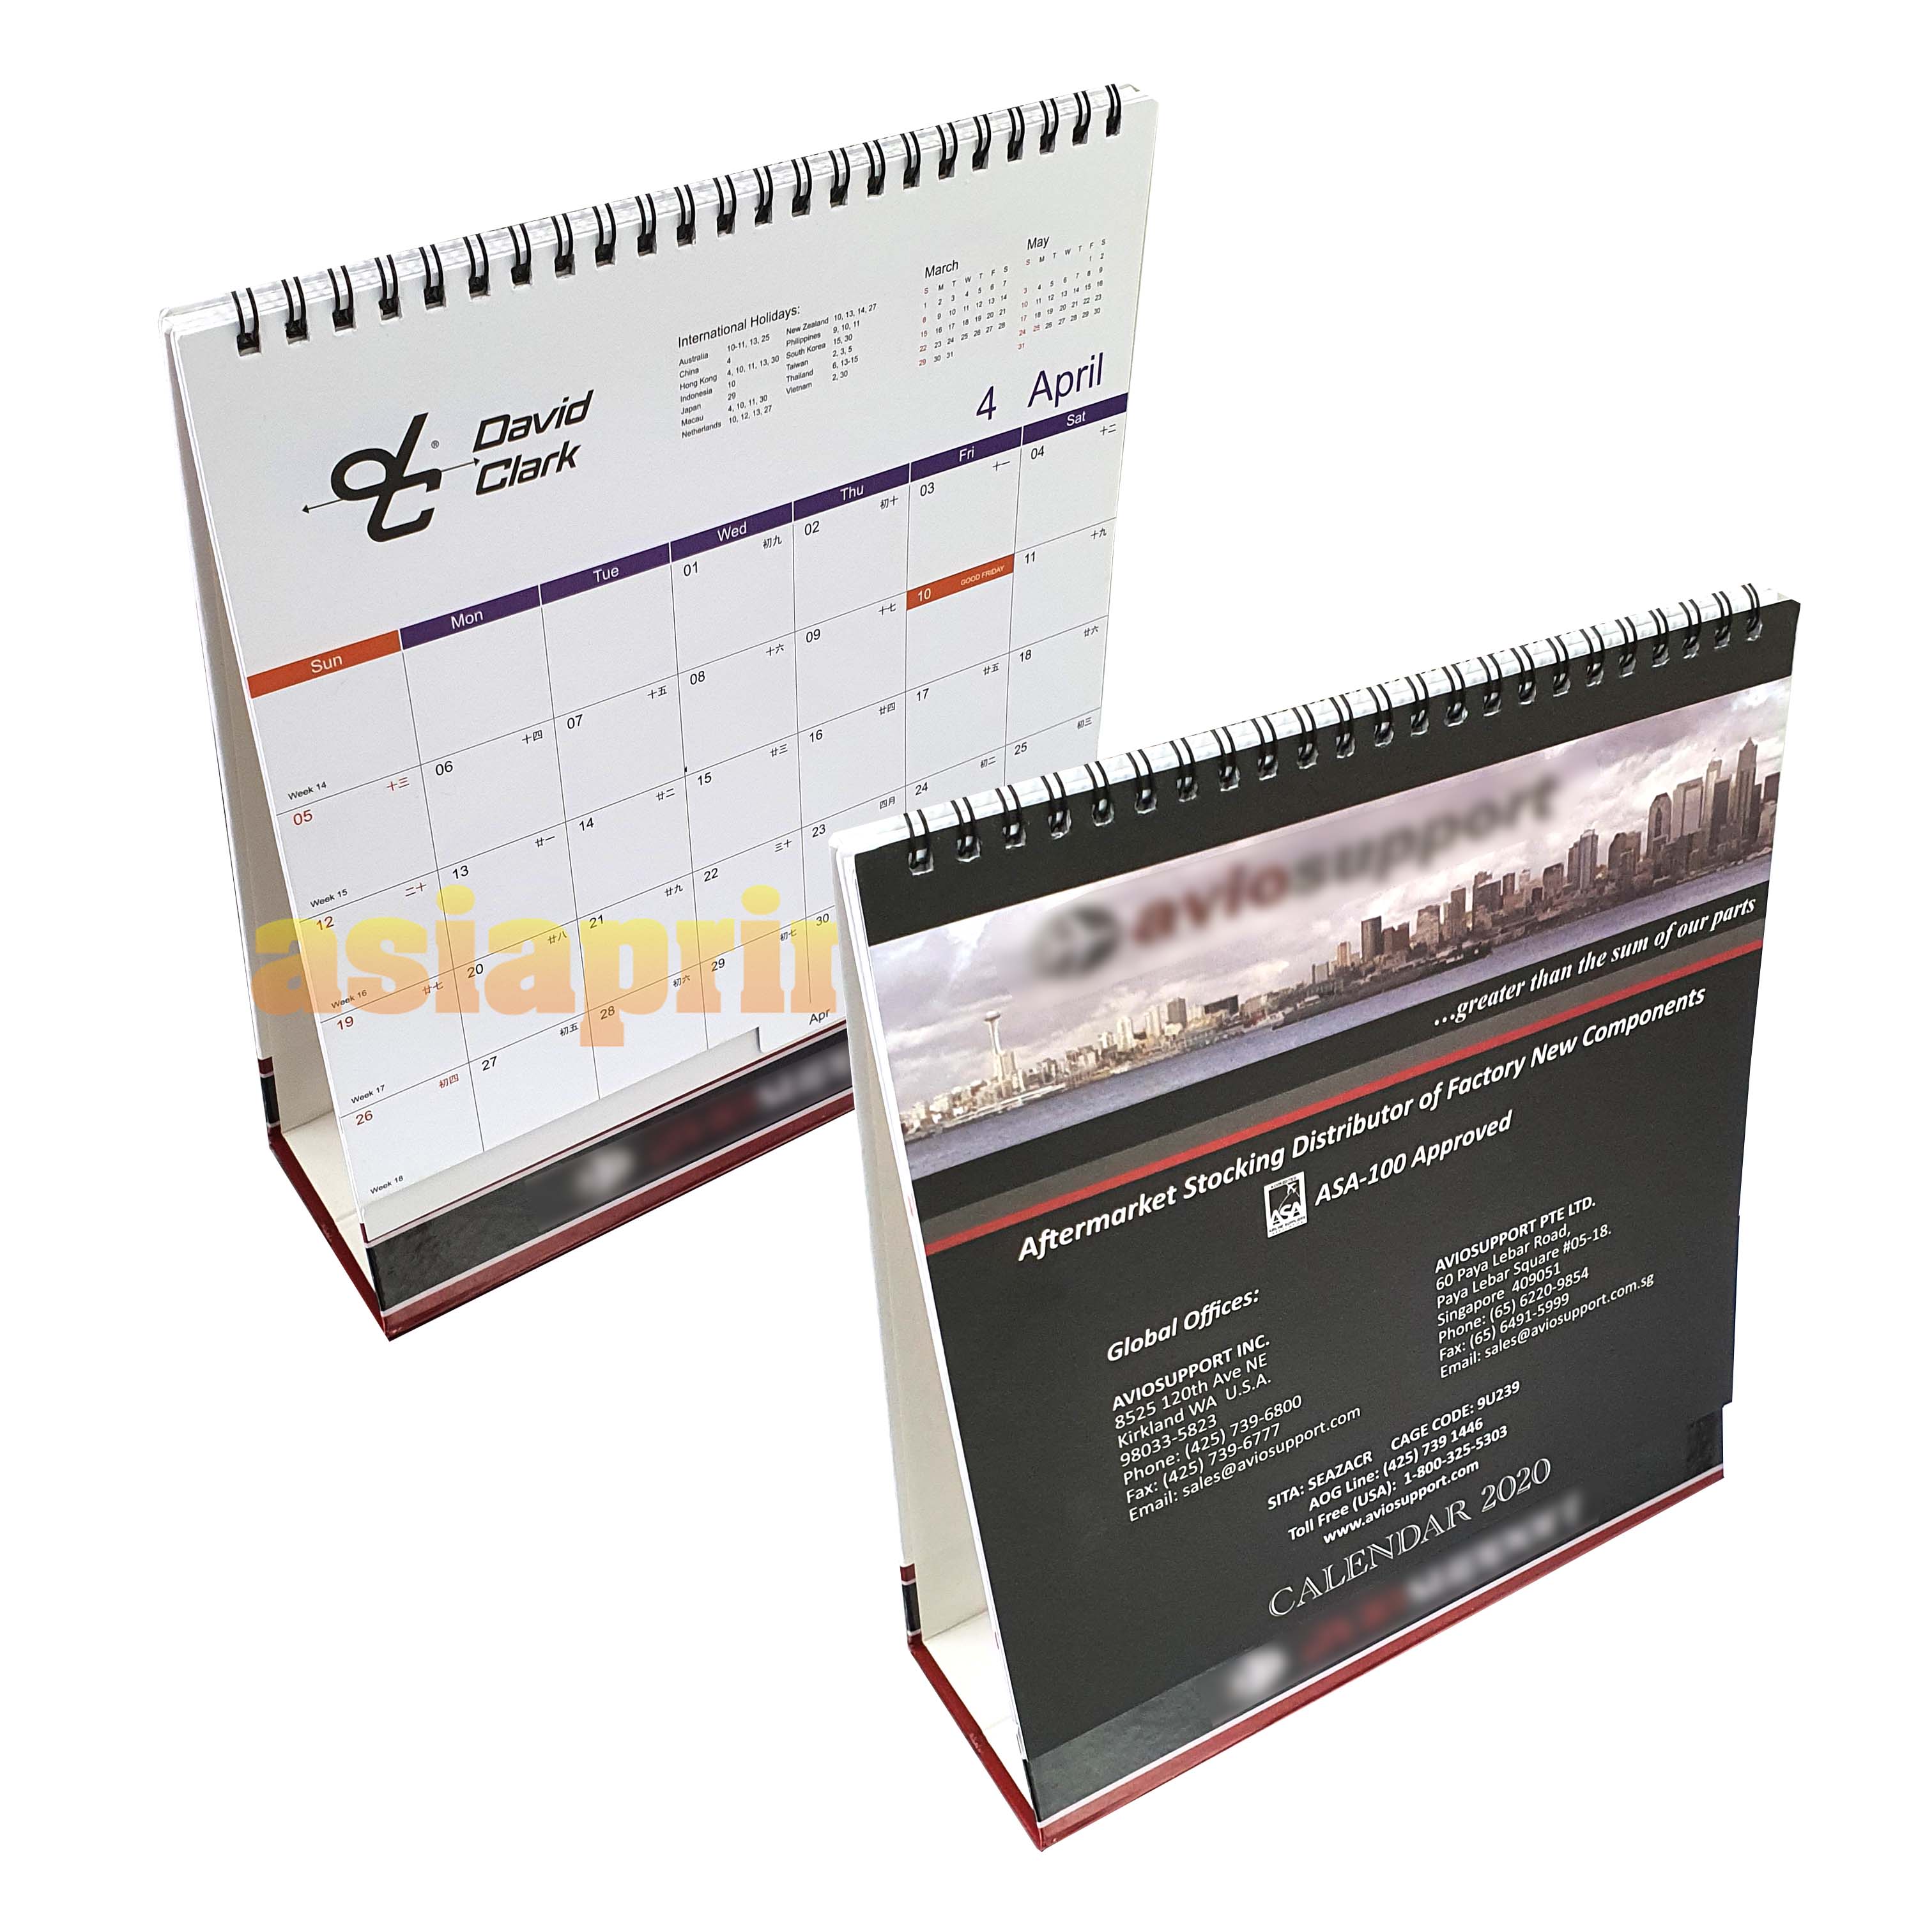 Table Calendars Supplier, Design Table Calendars, Desktop Calendar Designer,Malaysia Calendars, Print Corporate Calendars, Kedai Kalendar, Kedai Cetak Selangor